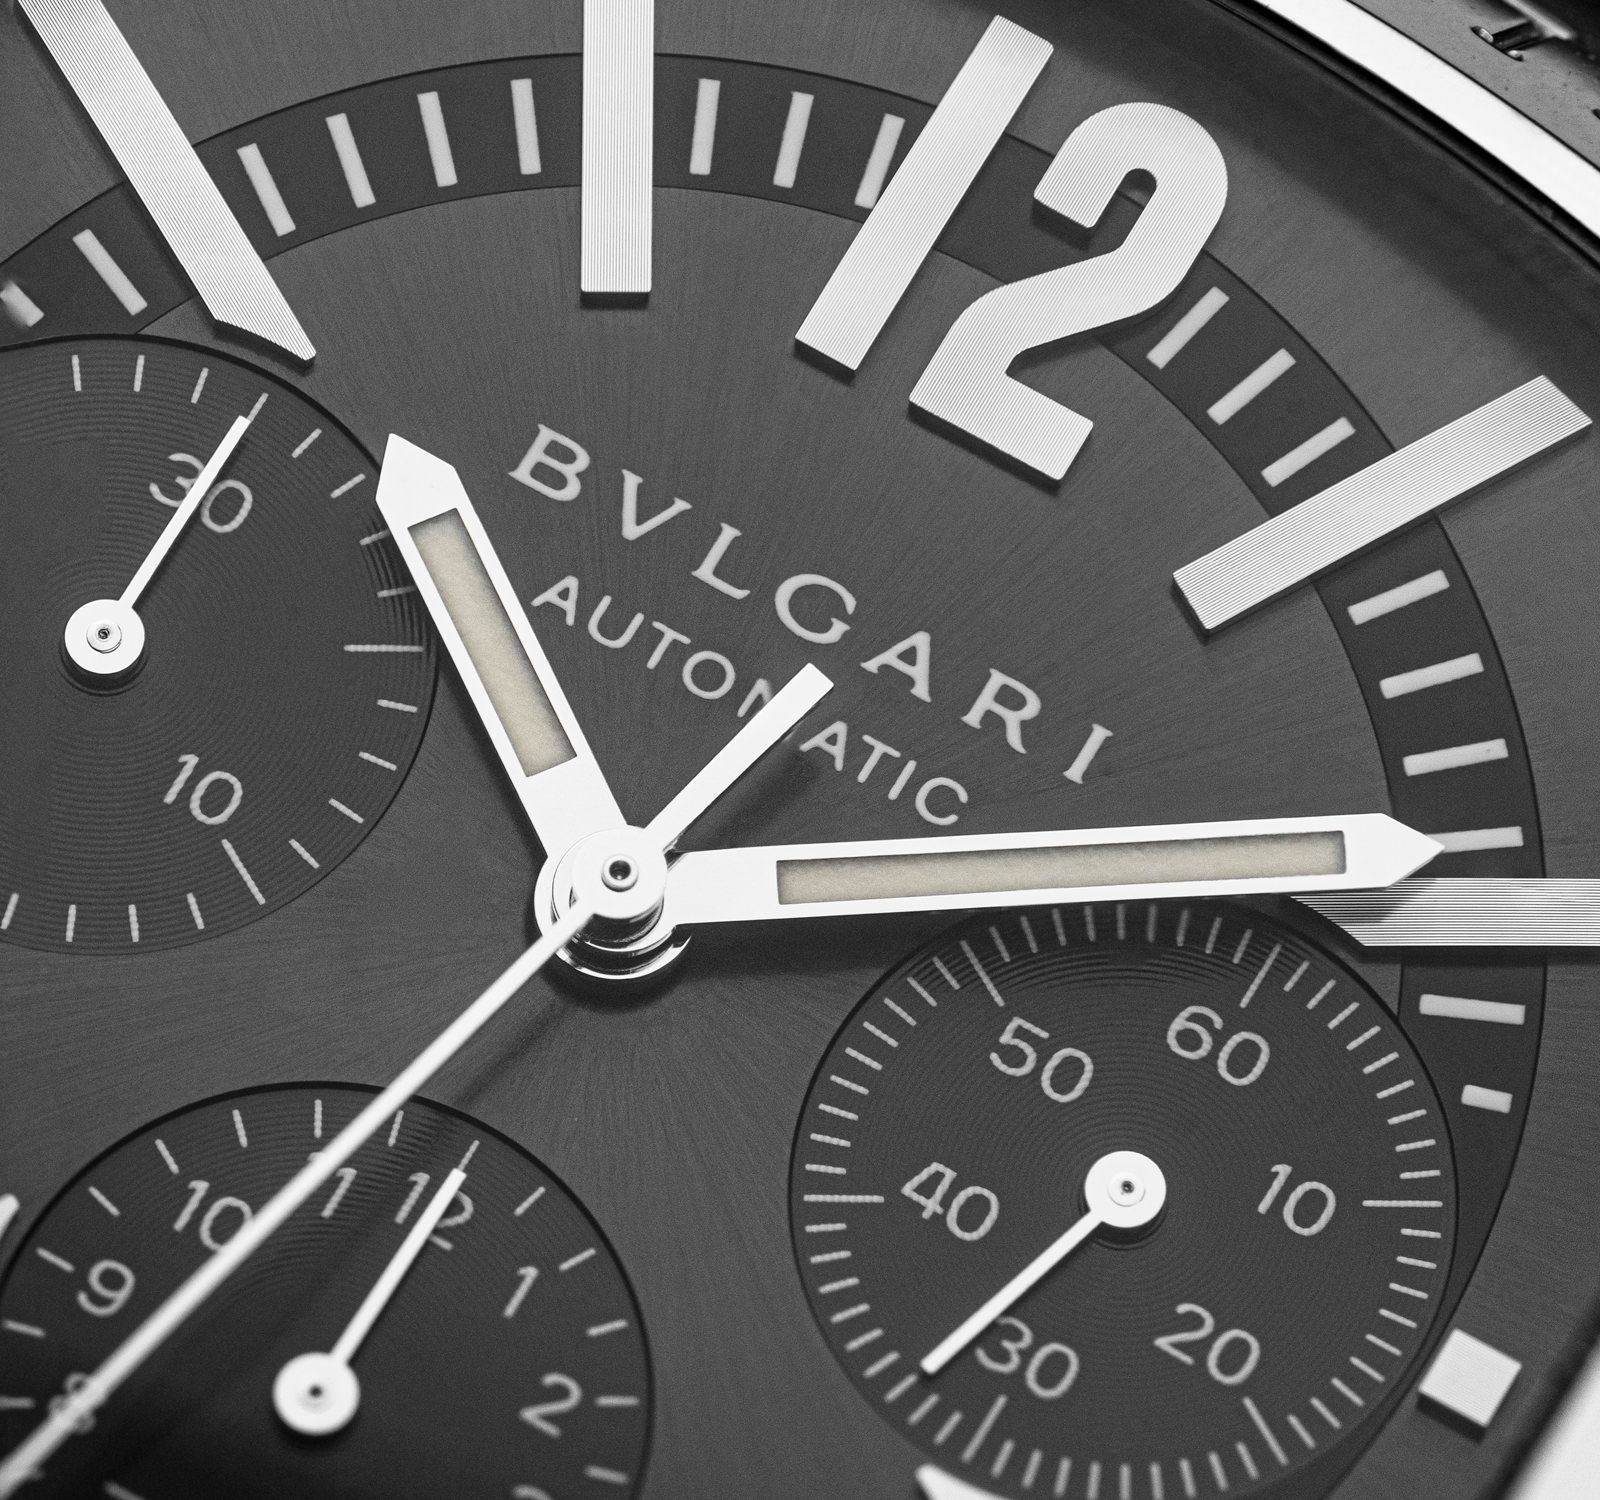 BVLGARI Watches